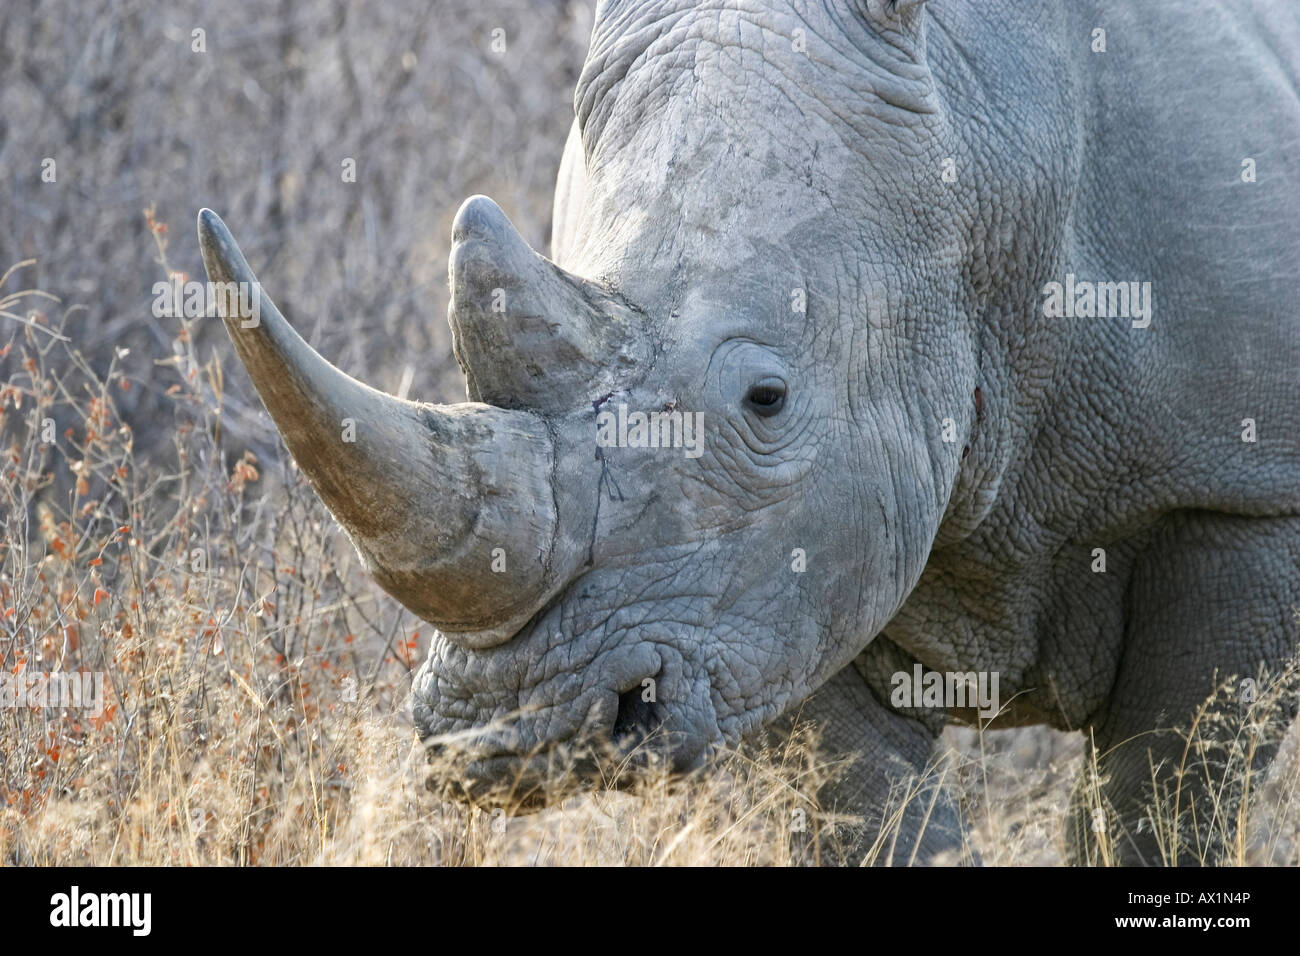 White Rhinoceros or Square-lipped rhinoceros (Ceratotherium simum), Khama Rhino Sanctuary Park, Serowe, Botswana, Africa Stock Photo